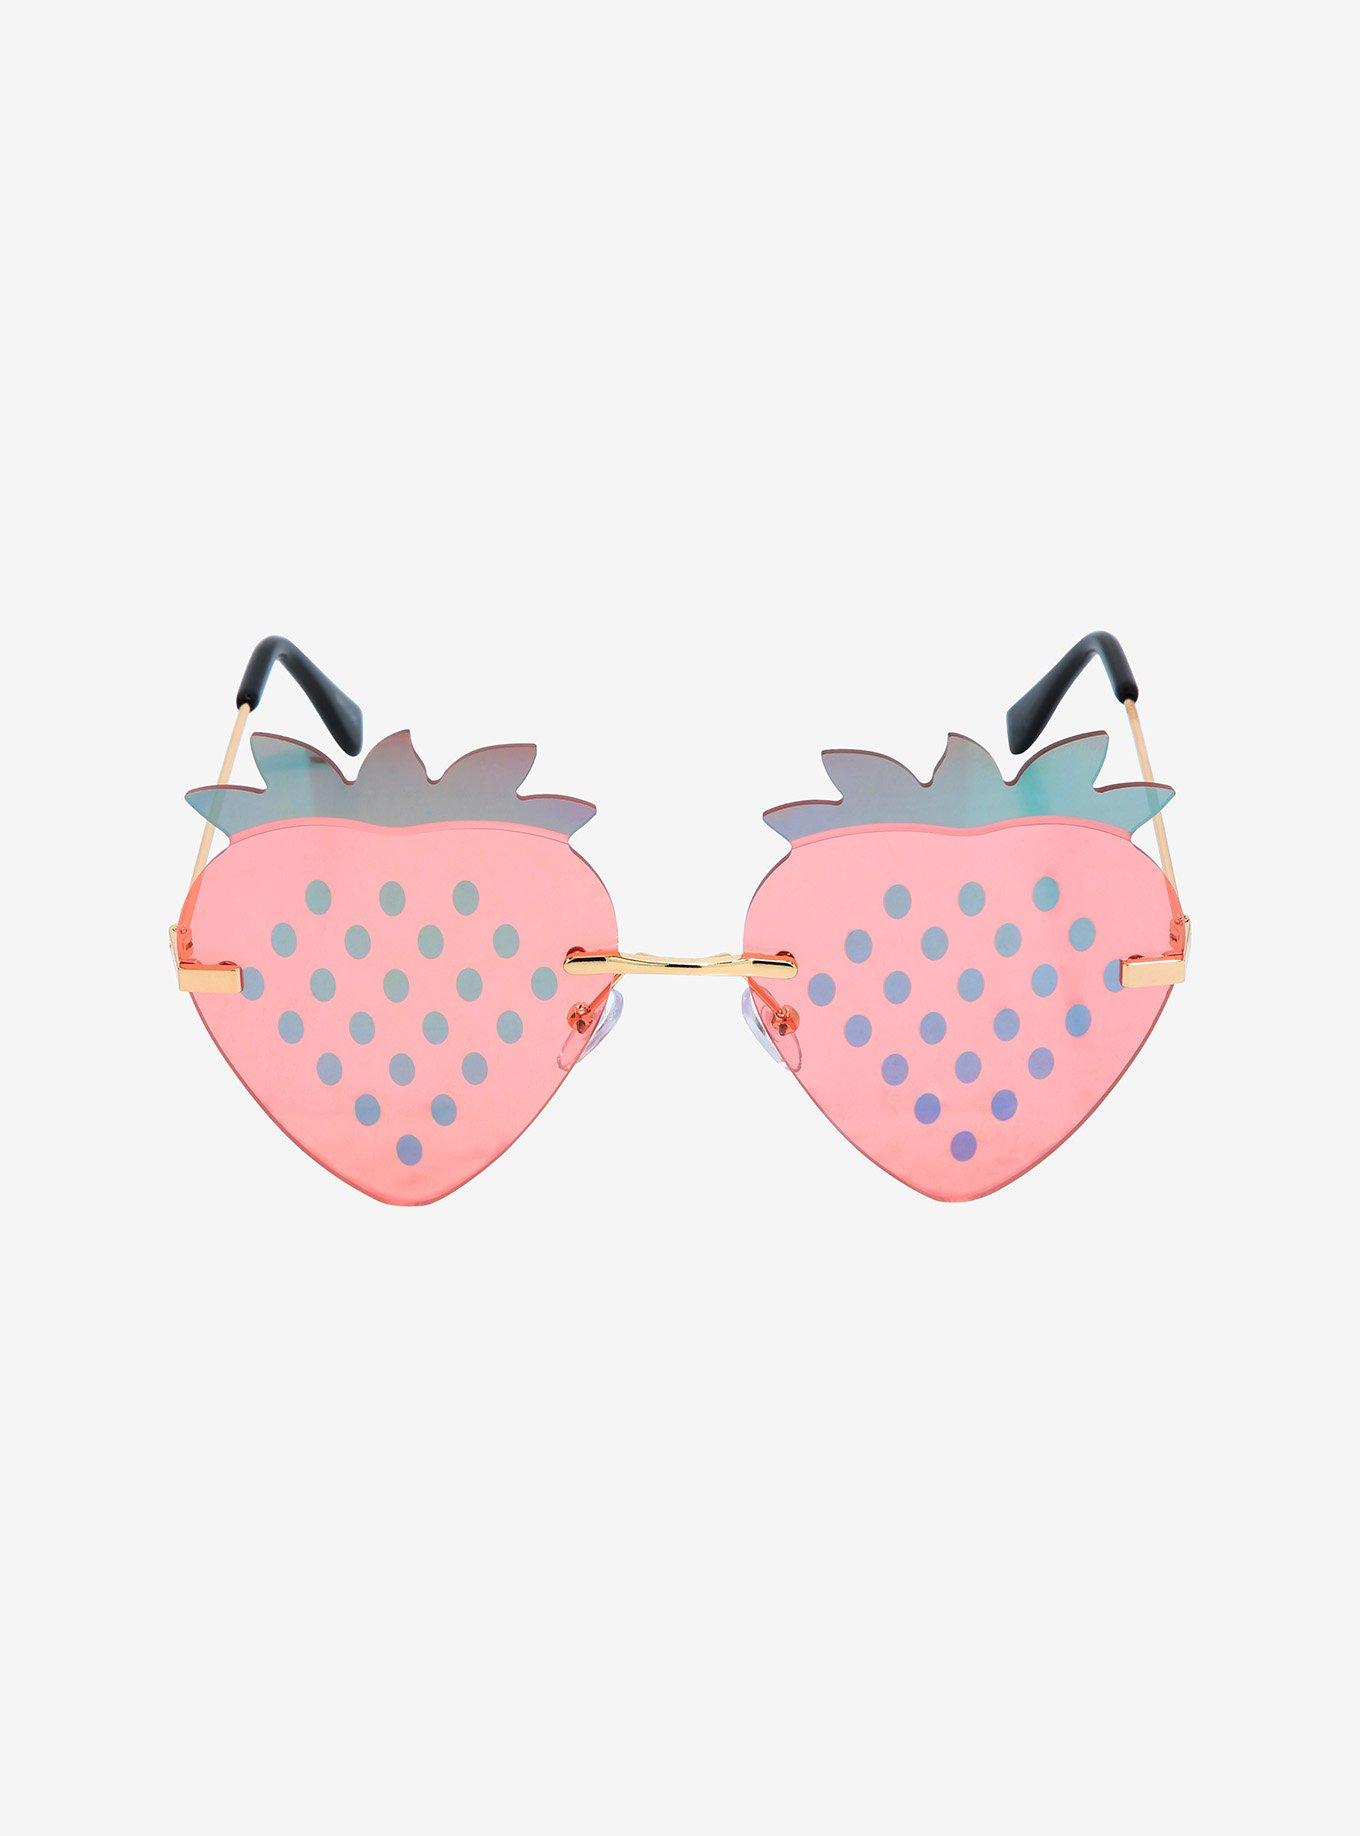 Kawaii Heart Sunglasses One-of-a-kind Glasses Strawberry